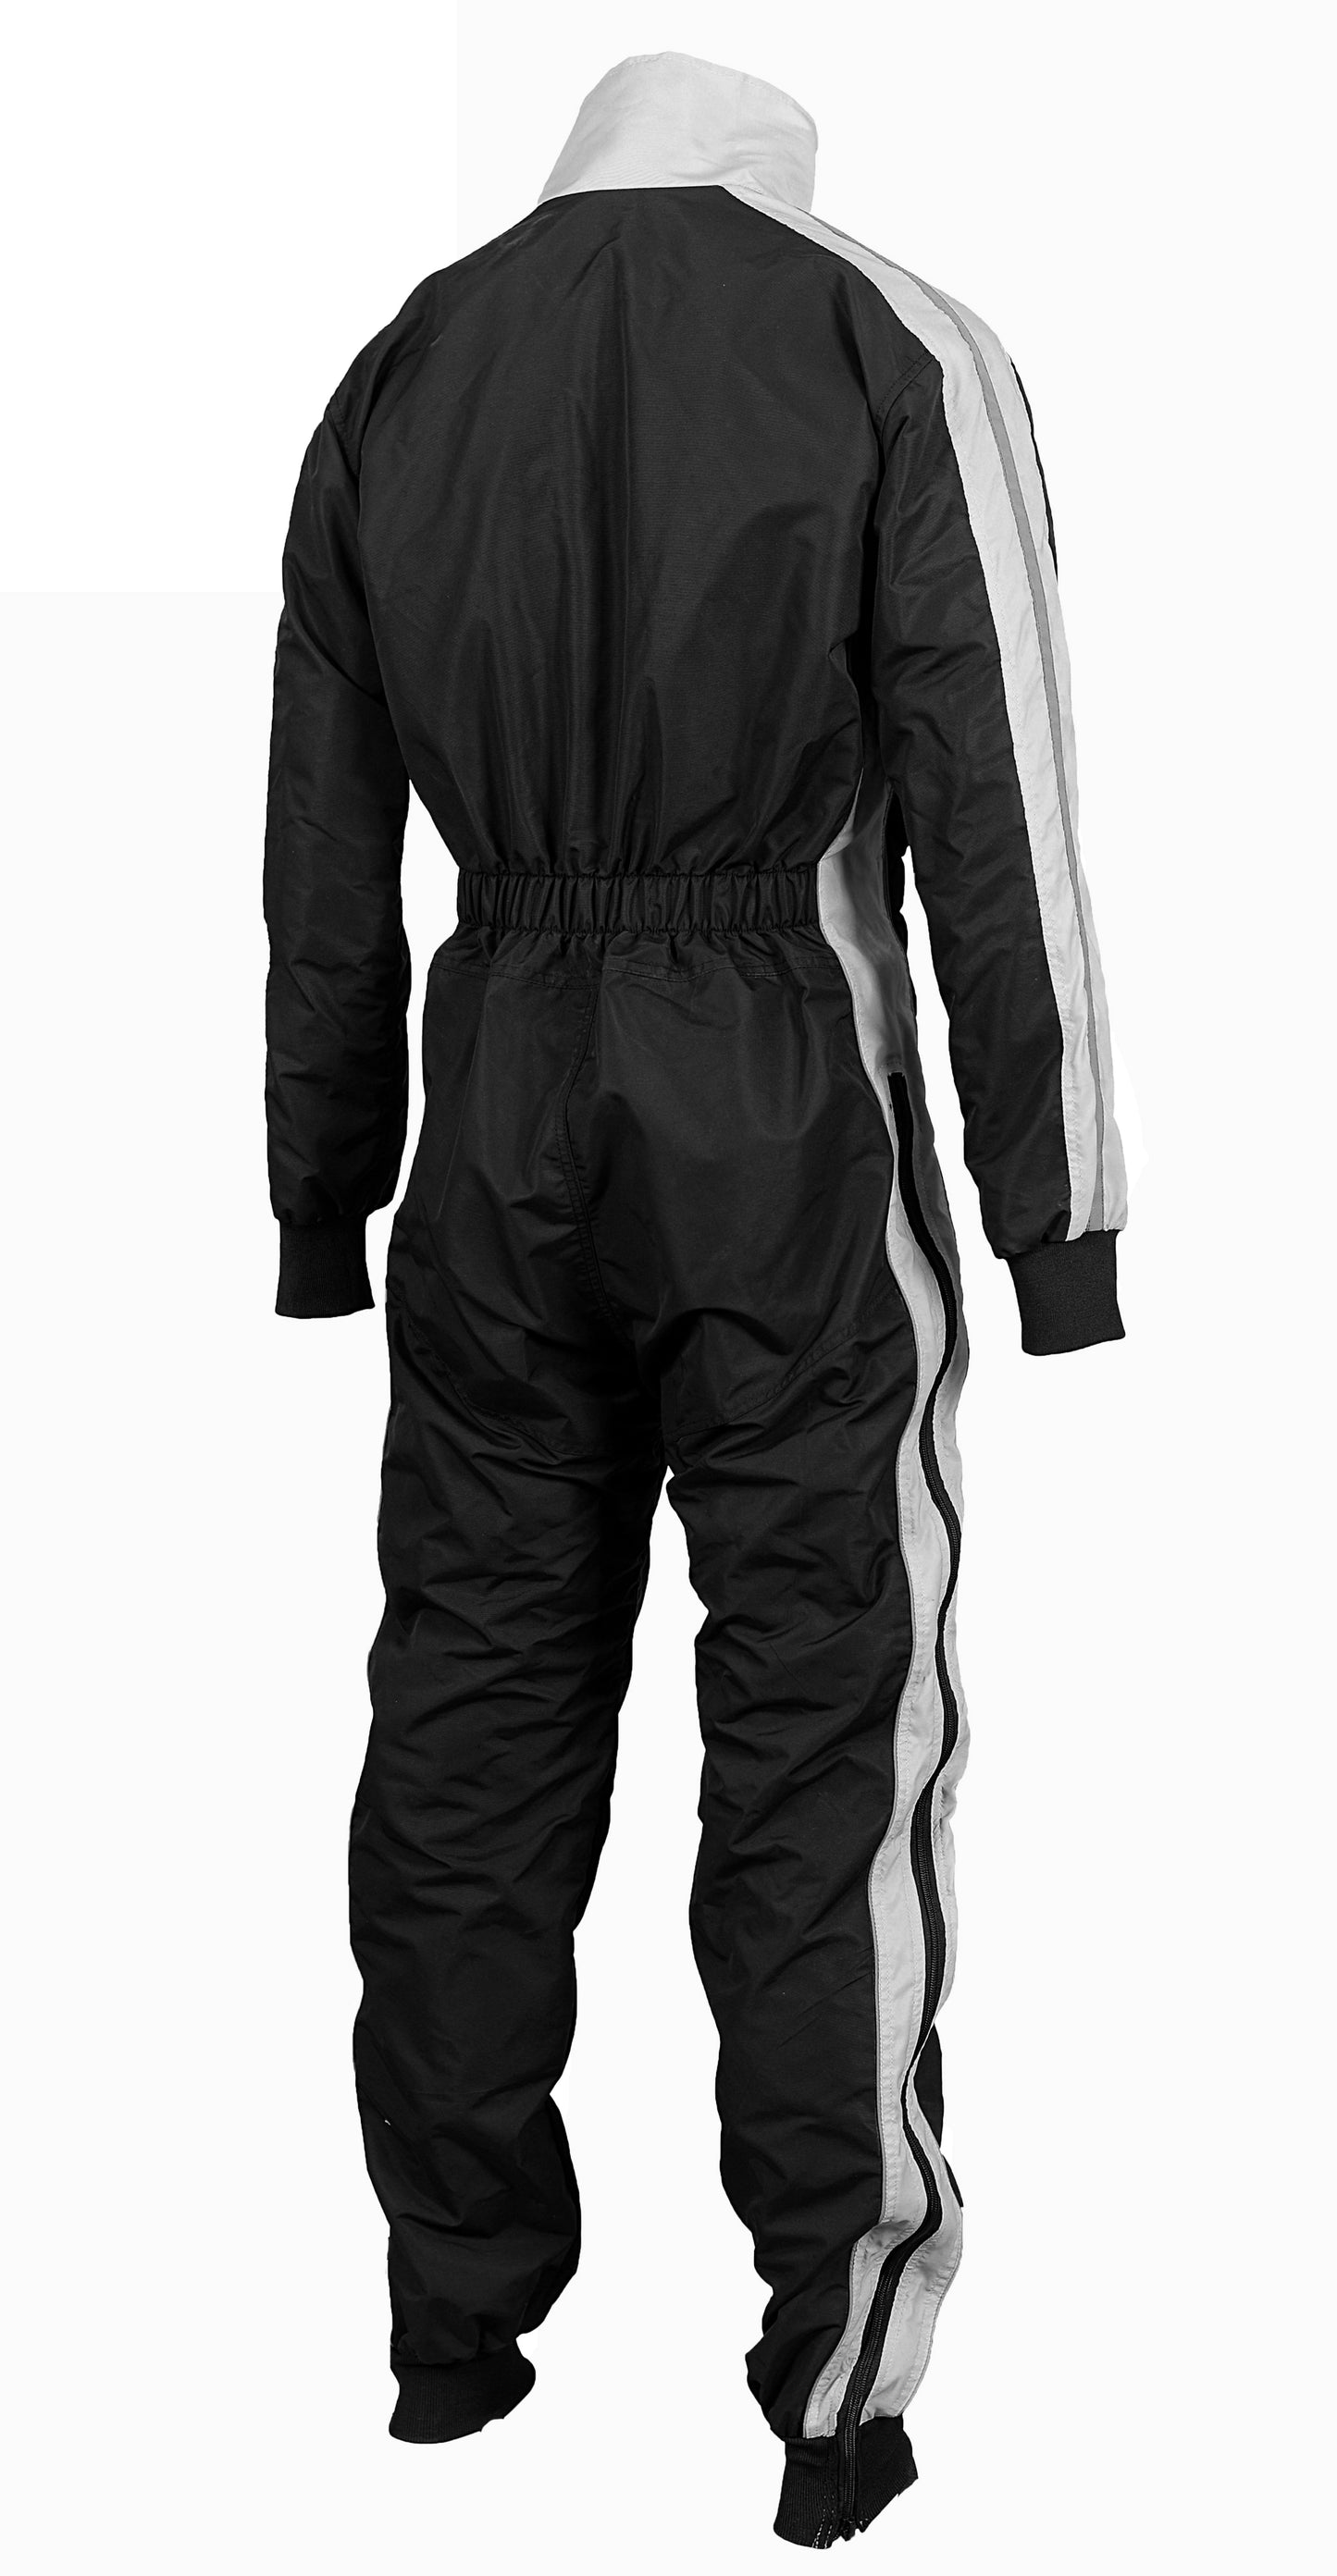 Latest Design Paragliding suit de//-01